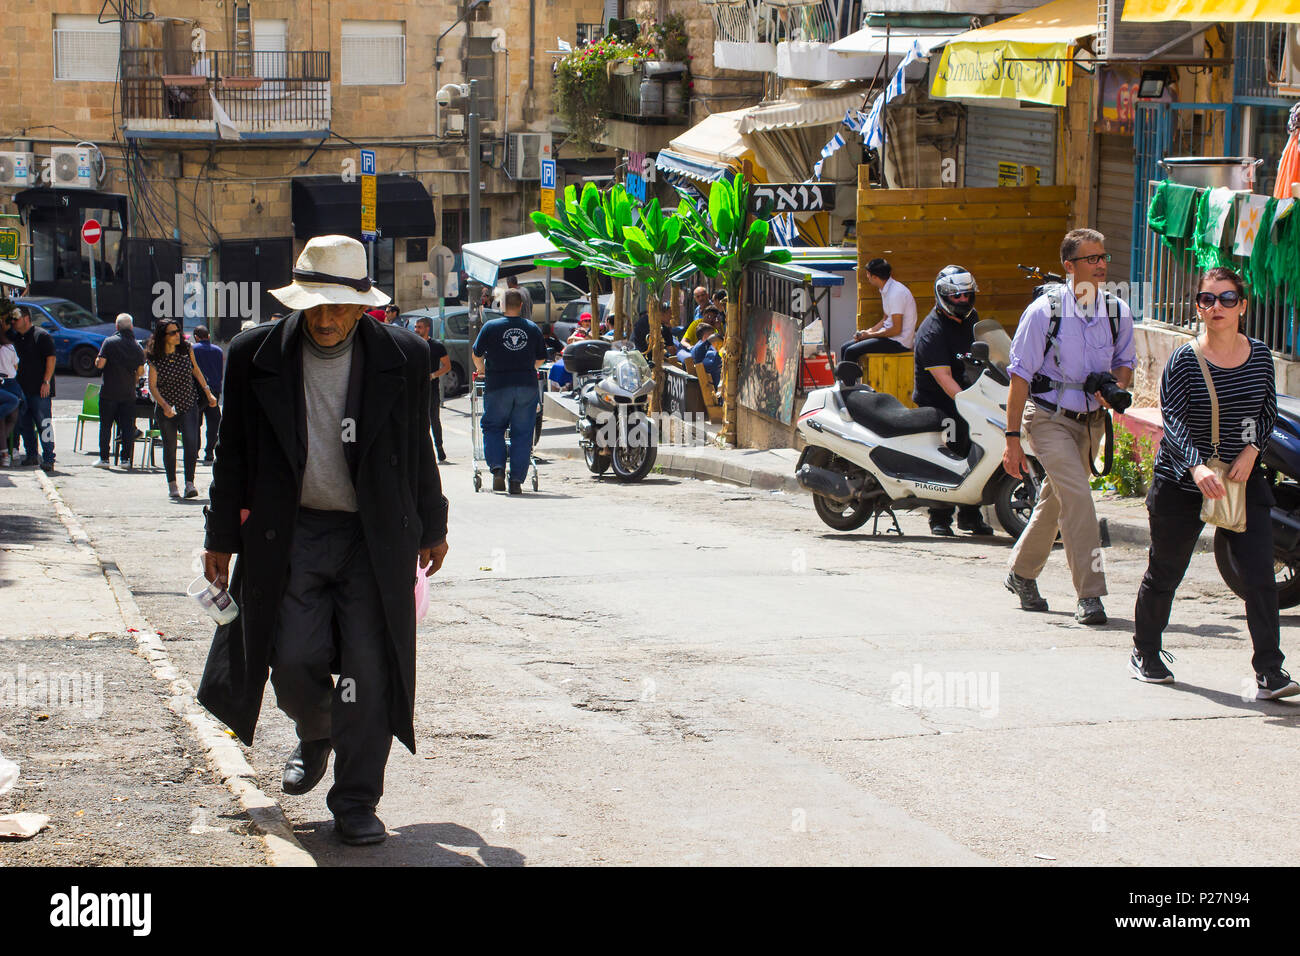 9 mai 2018 Un homme d'âge mûr d'un long manteau sombre et floppy hat faisant son chemin jusqu'à une colline à l'animation de la rue du marché Mahane Yehuda à Jérusalem Israël Banque D'Images